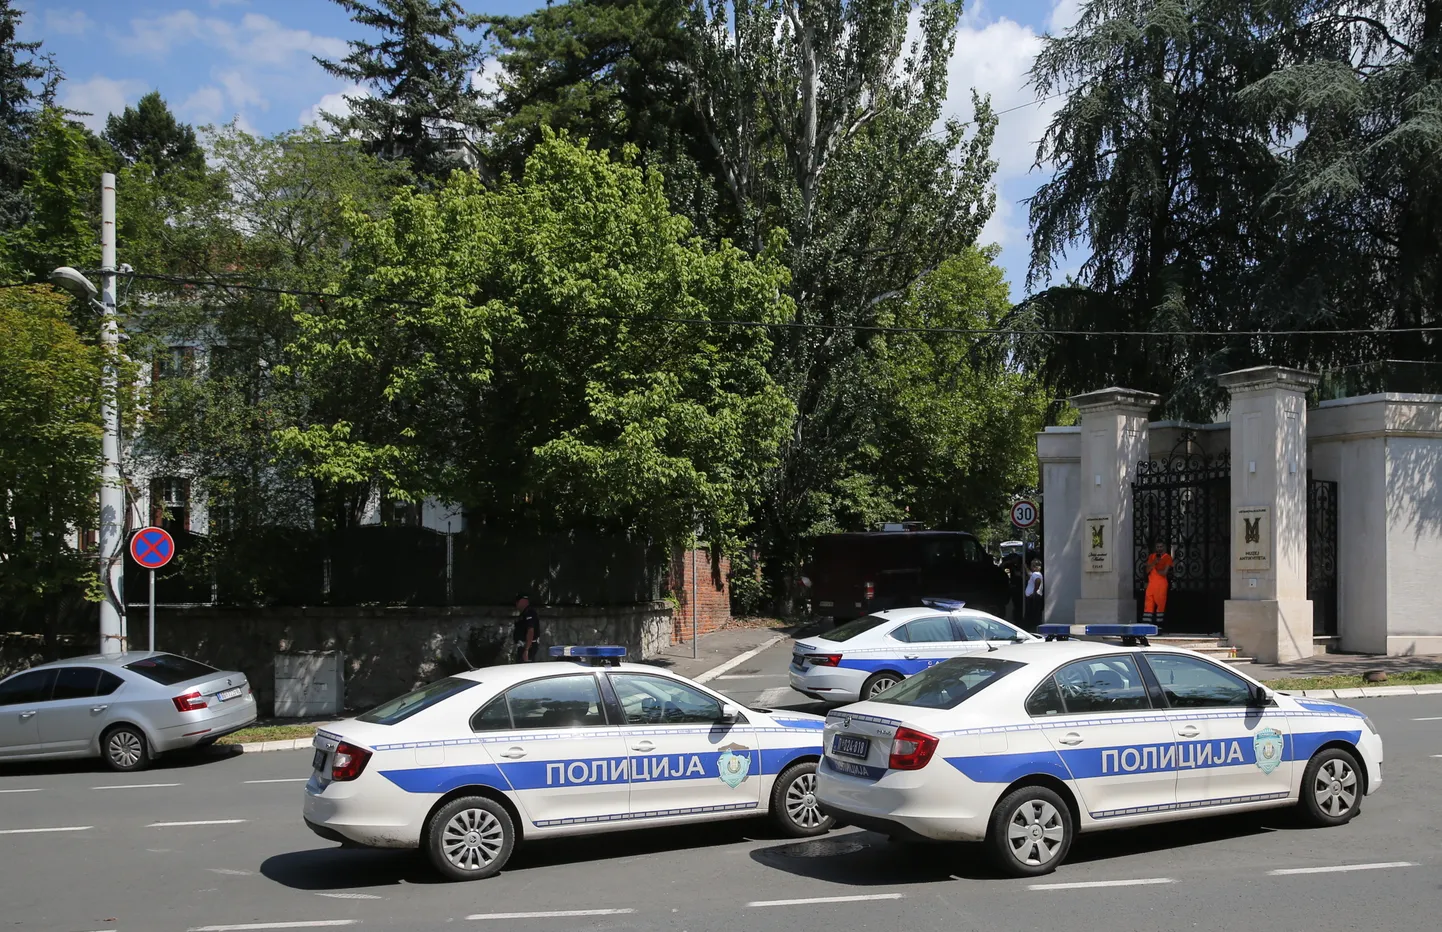 Politsei Belgradis Iisraeli saatkonna juures.